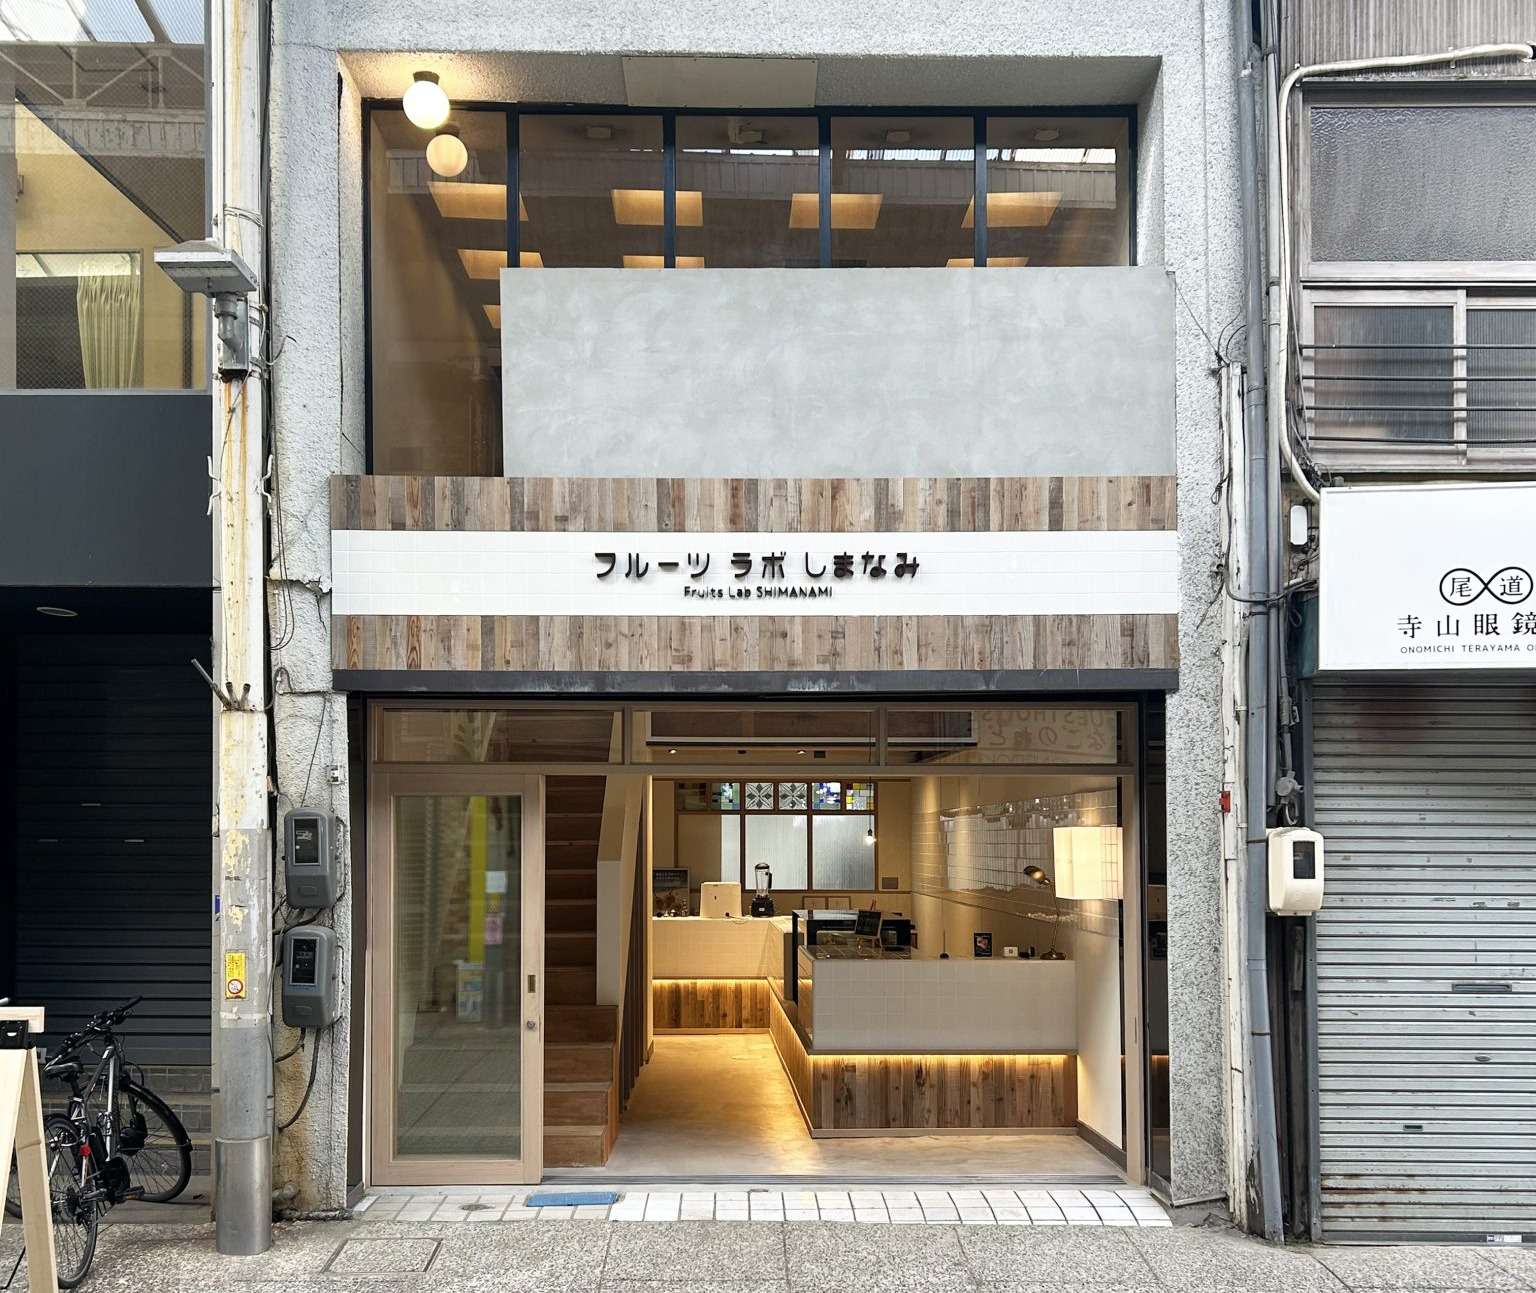 広島の尾道で連続で店舗設計、店舗デザインさせて頂いたお店がオープン。GWは是非、尾道へ!!